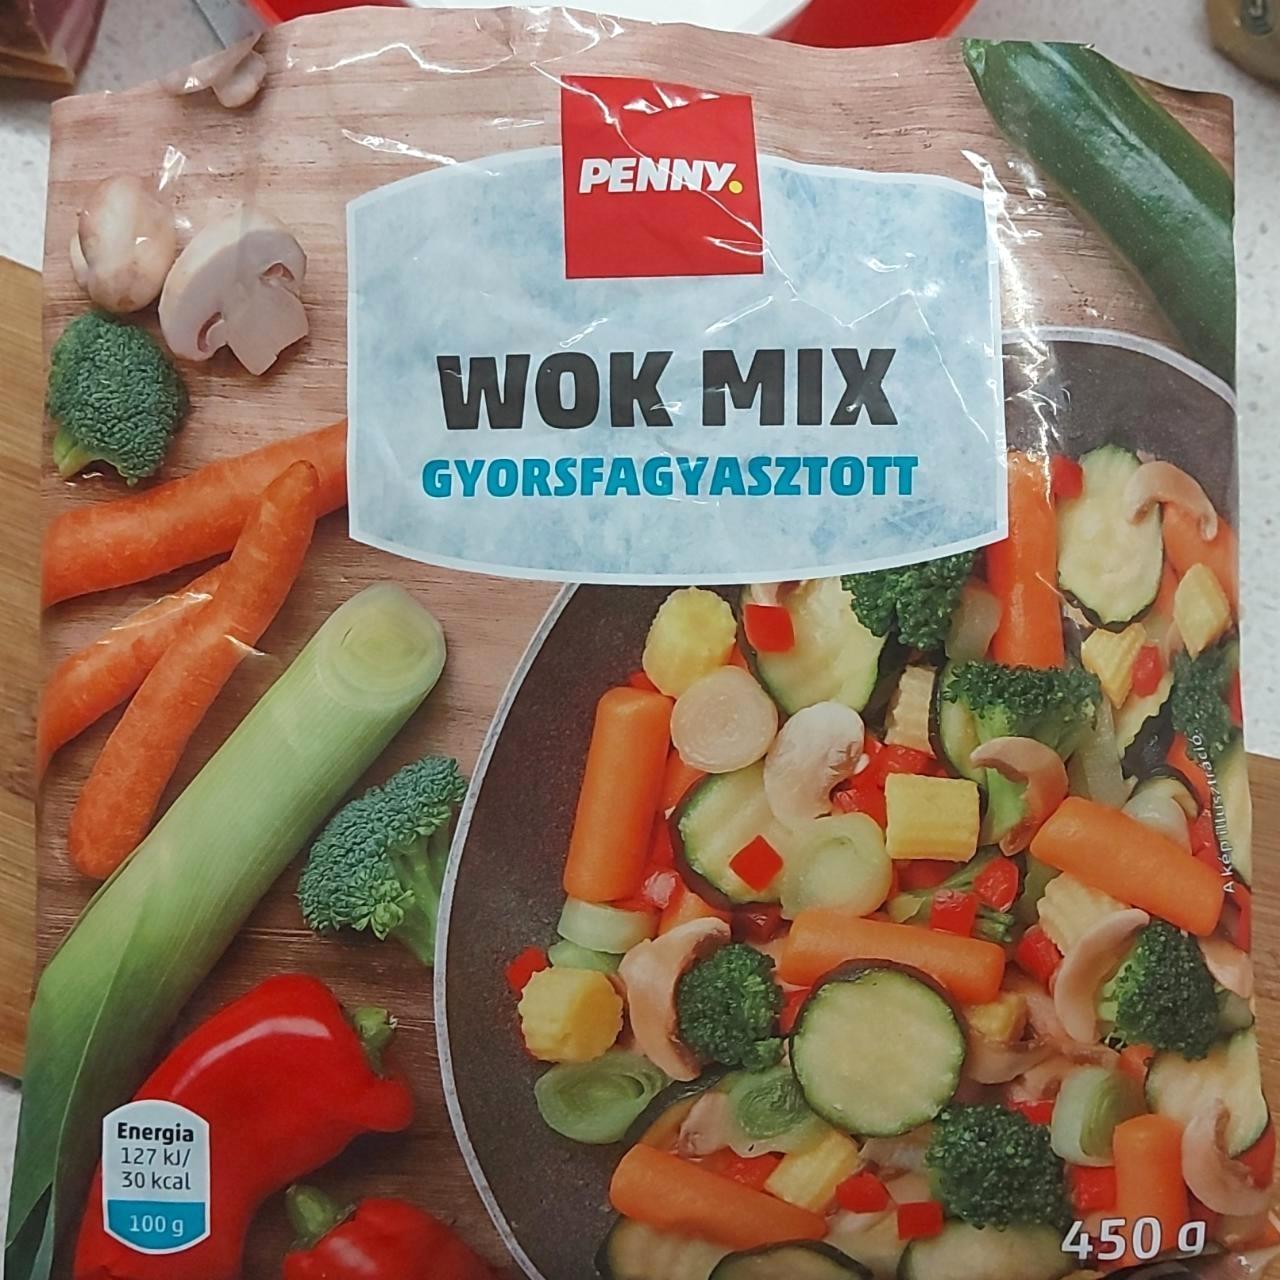 Képek - Fagyasztott wok mix Penny